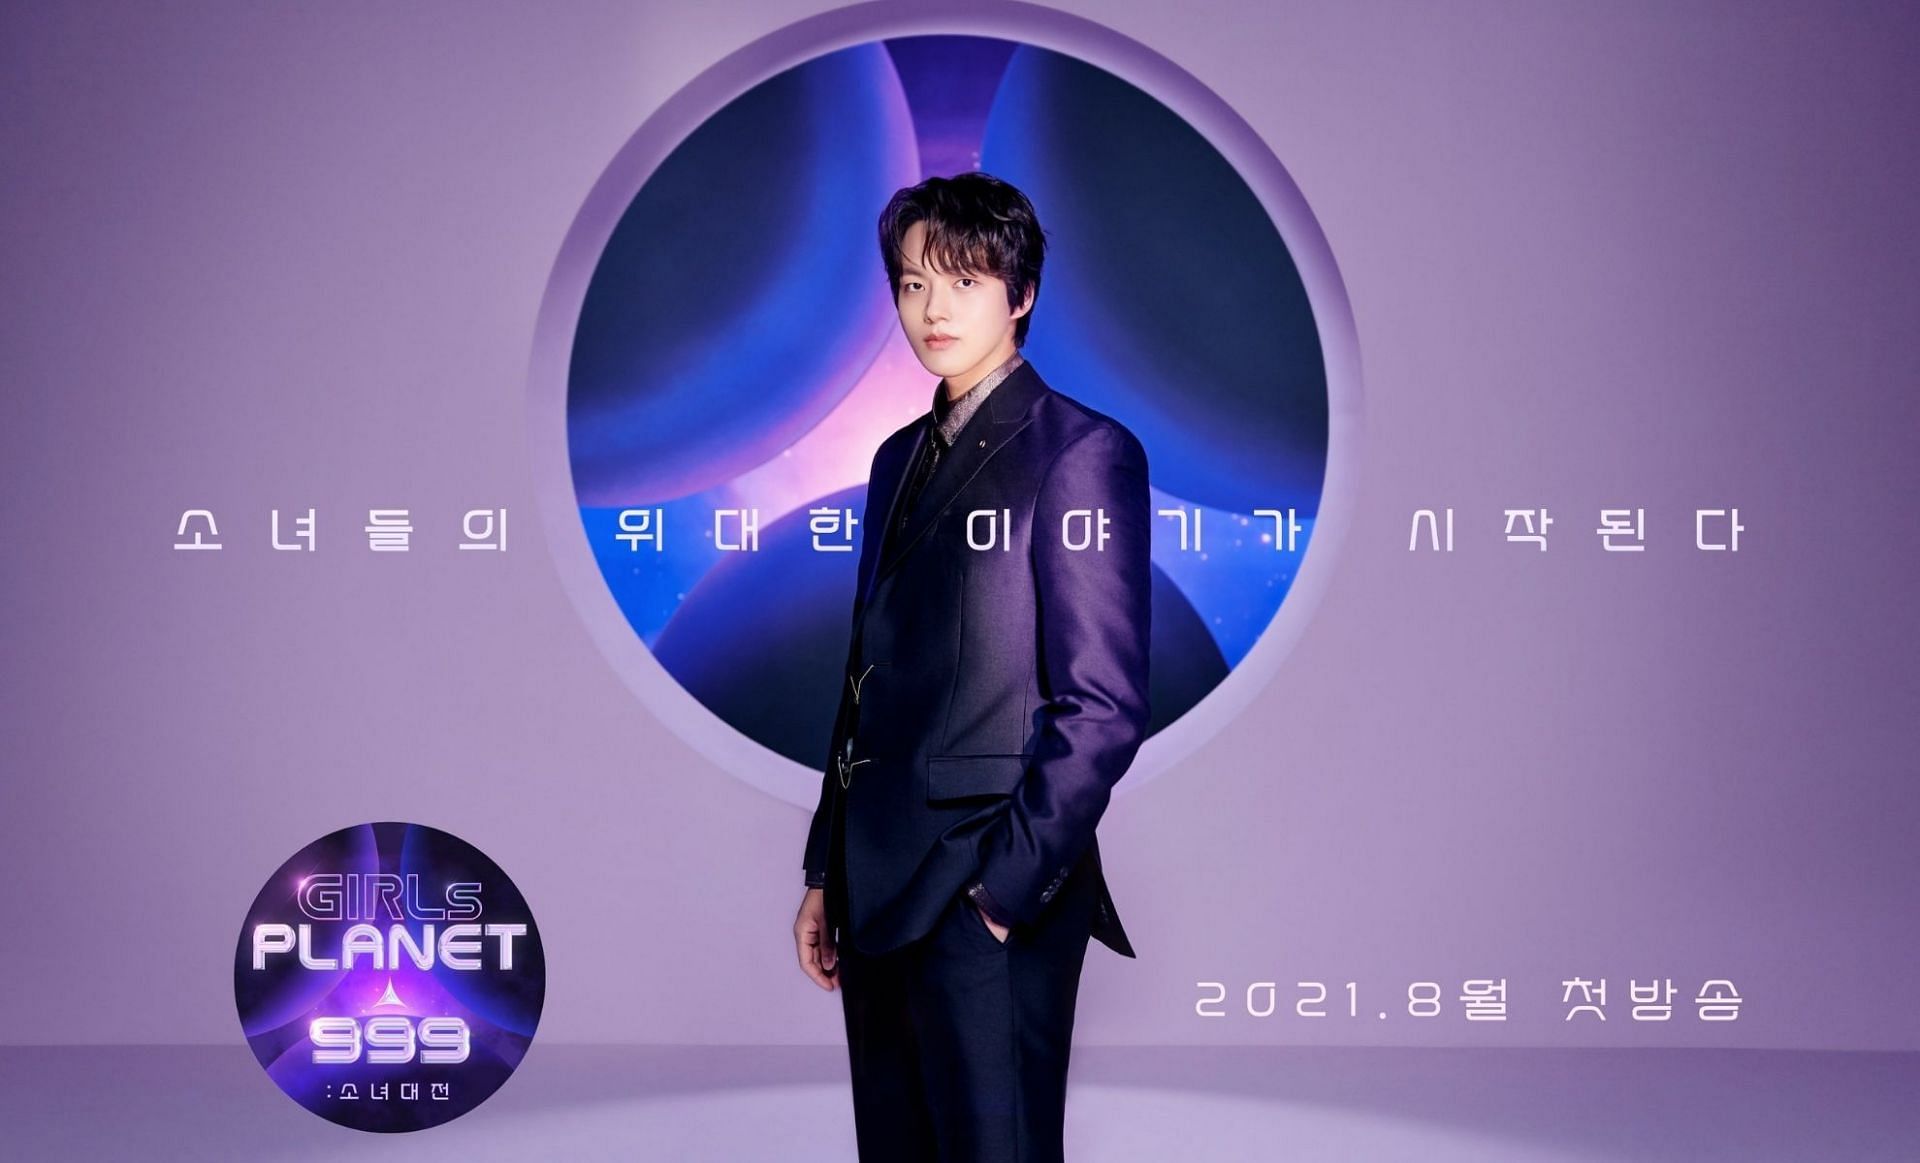 &#039;Girls Planet 999&#039; Planet Master Yeo Jin Goo poster (Imager via Twitter/@MnetKR)